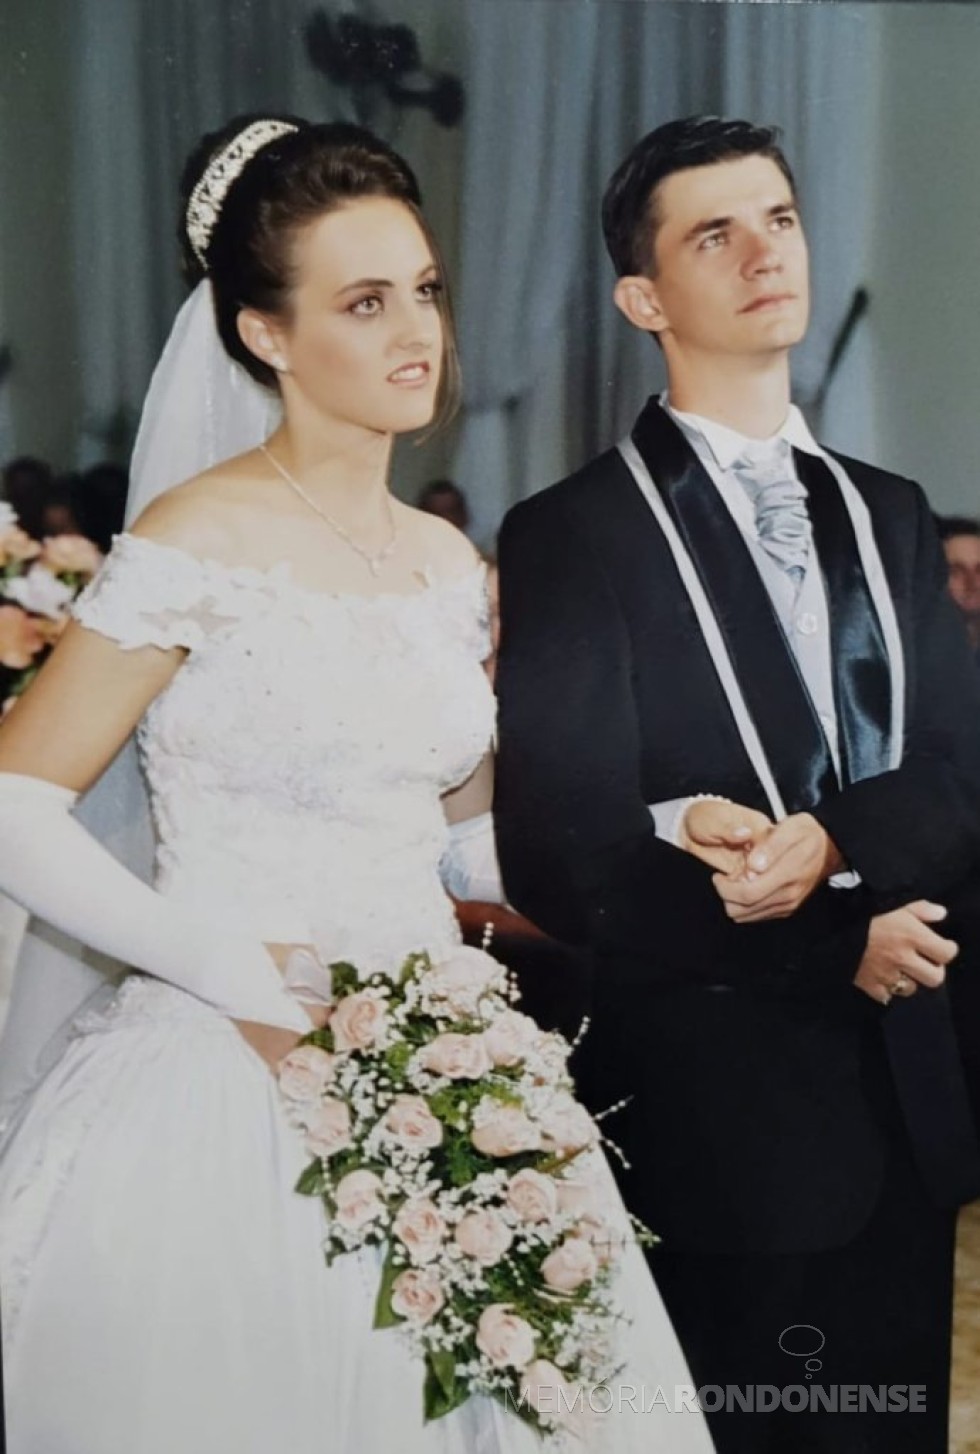 || Noivos Anete Lenz e Vanderlei Britzke que casaram-se em abril de 2004.
Imagem: Acervo do casal - FOTO 4 -